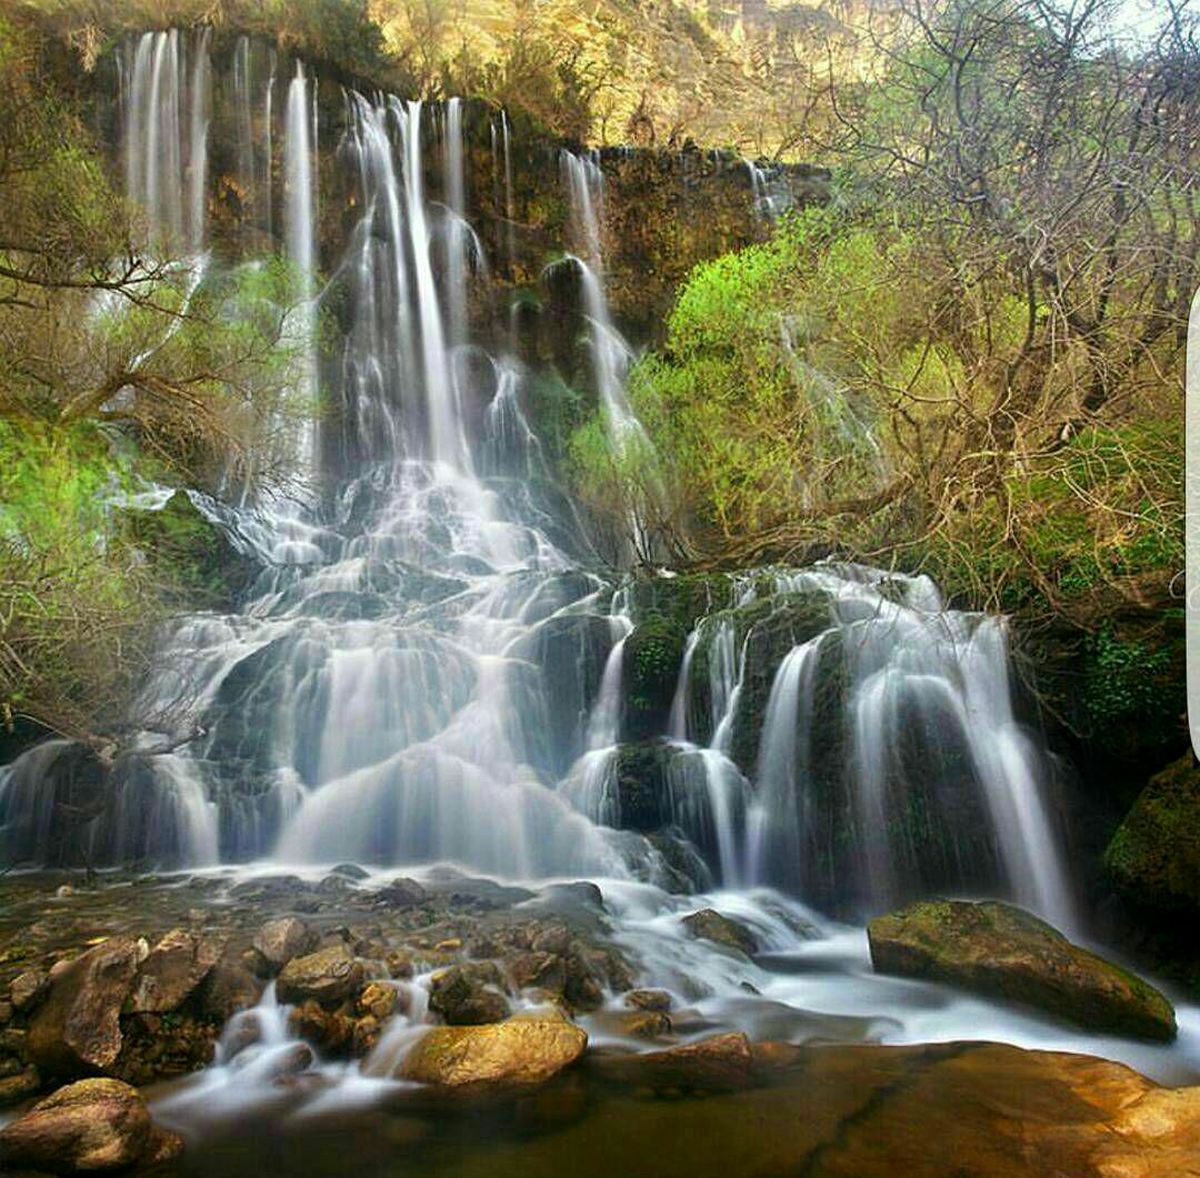 عکسی زیبا از آبشار "شوی" در استان لرستان